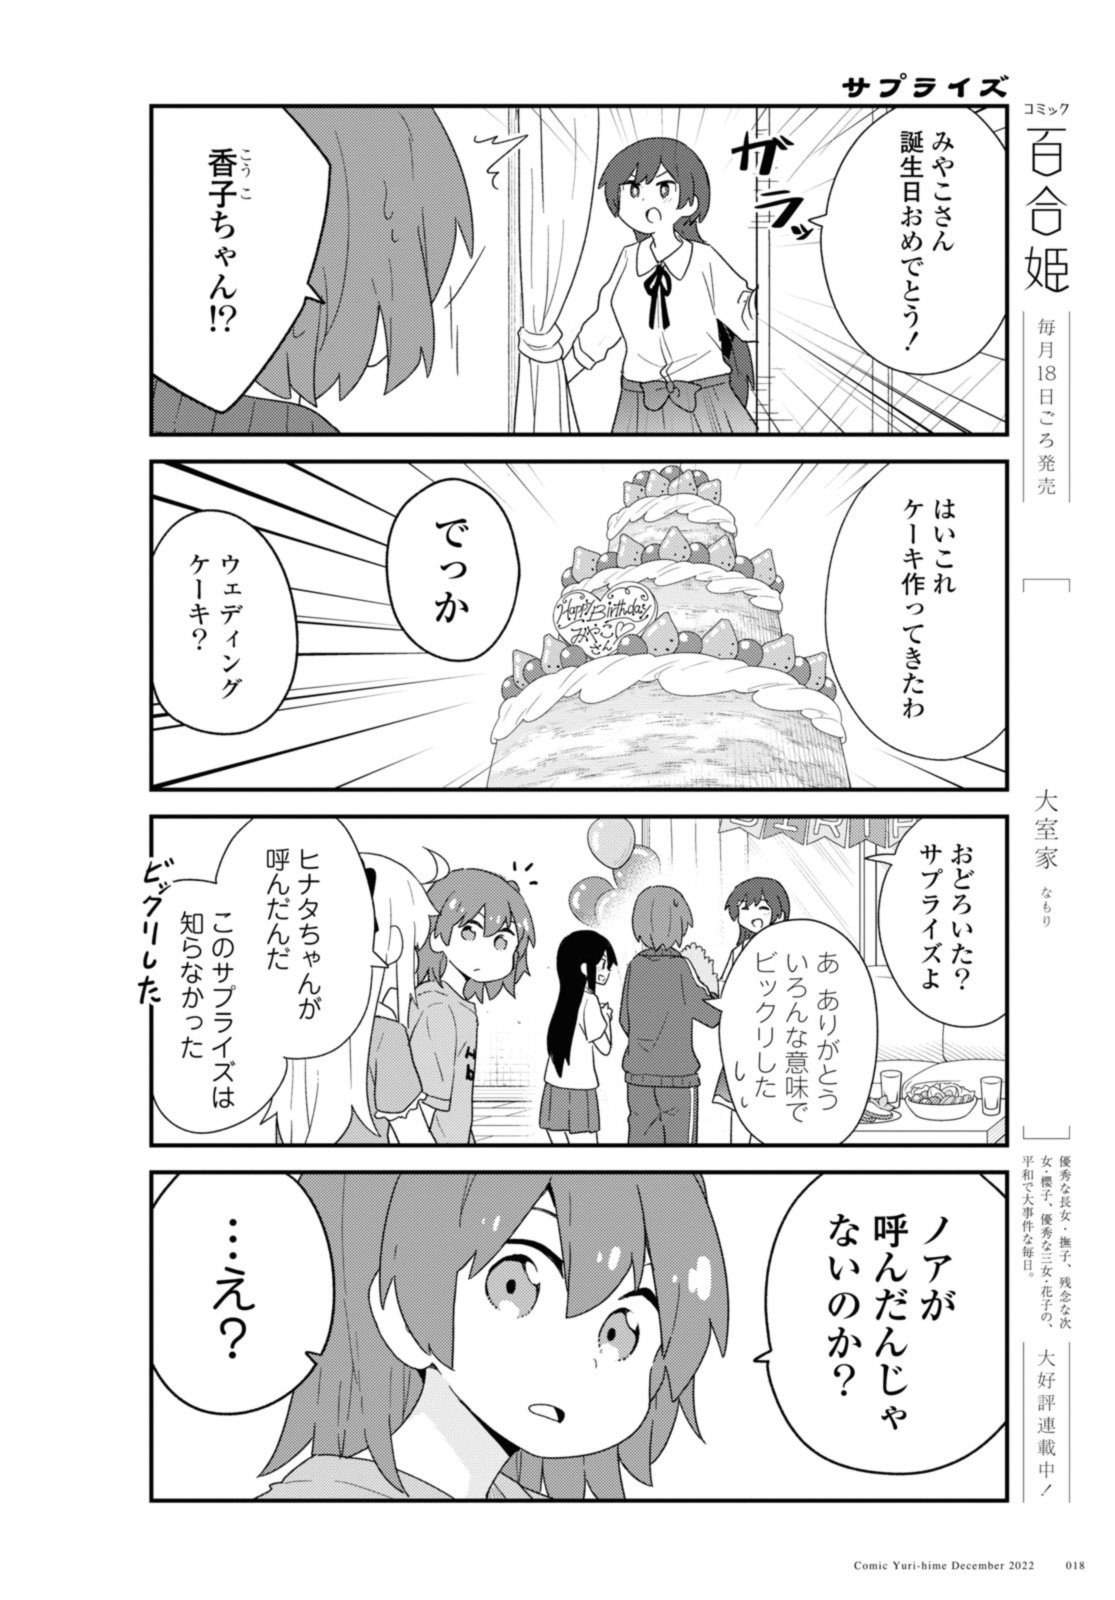 Watashi ni Tenshi ga Maiorita! - Chapter 100.1 - Page 10